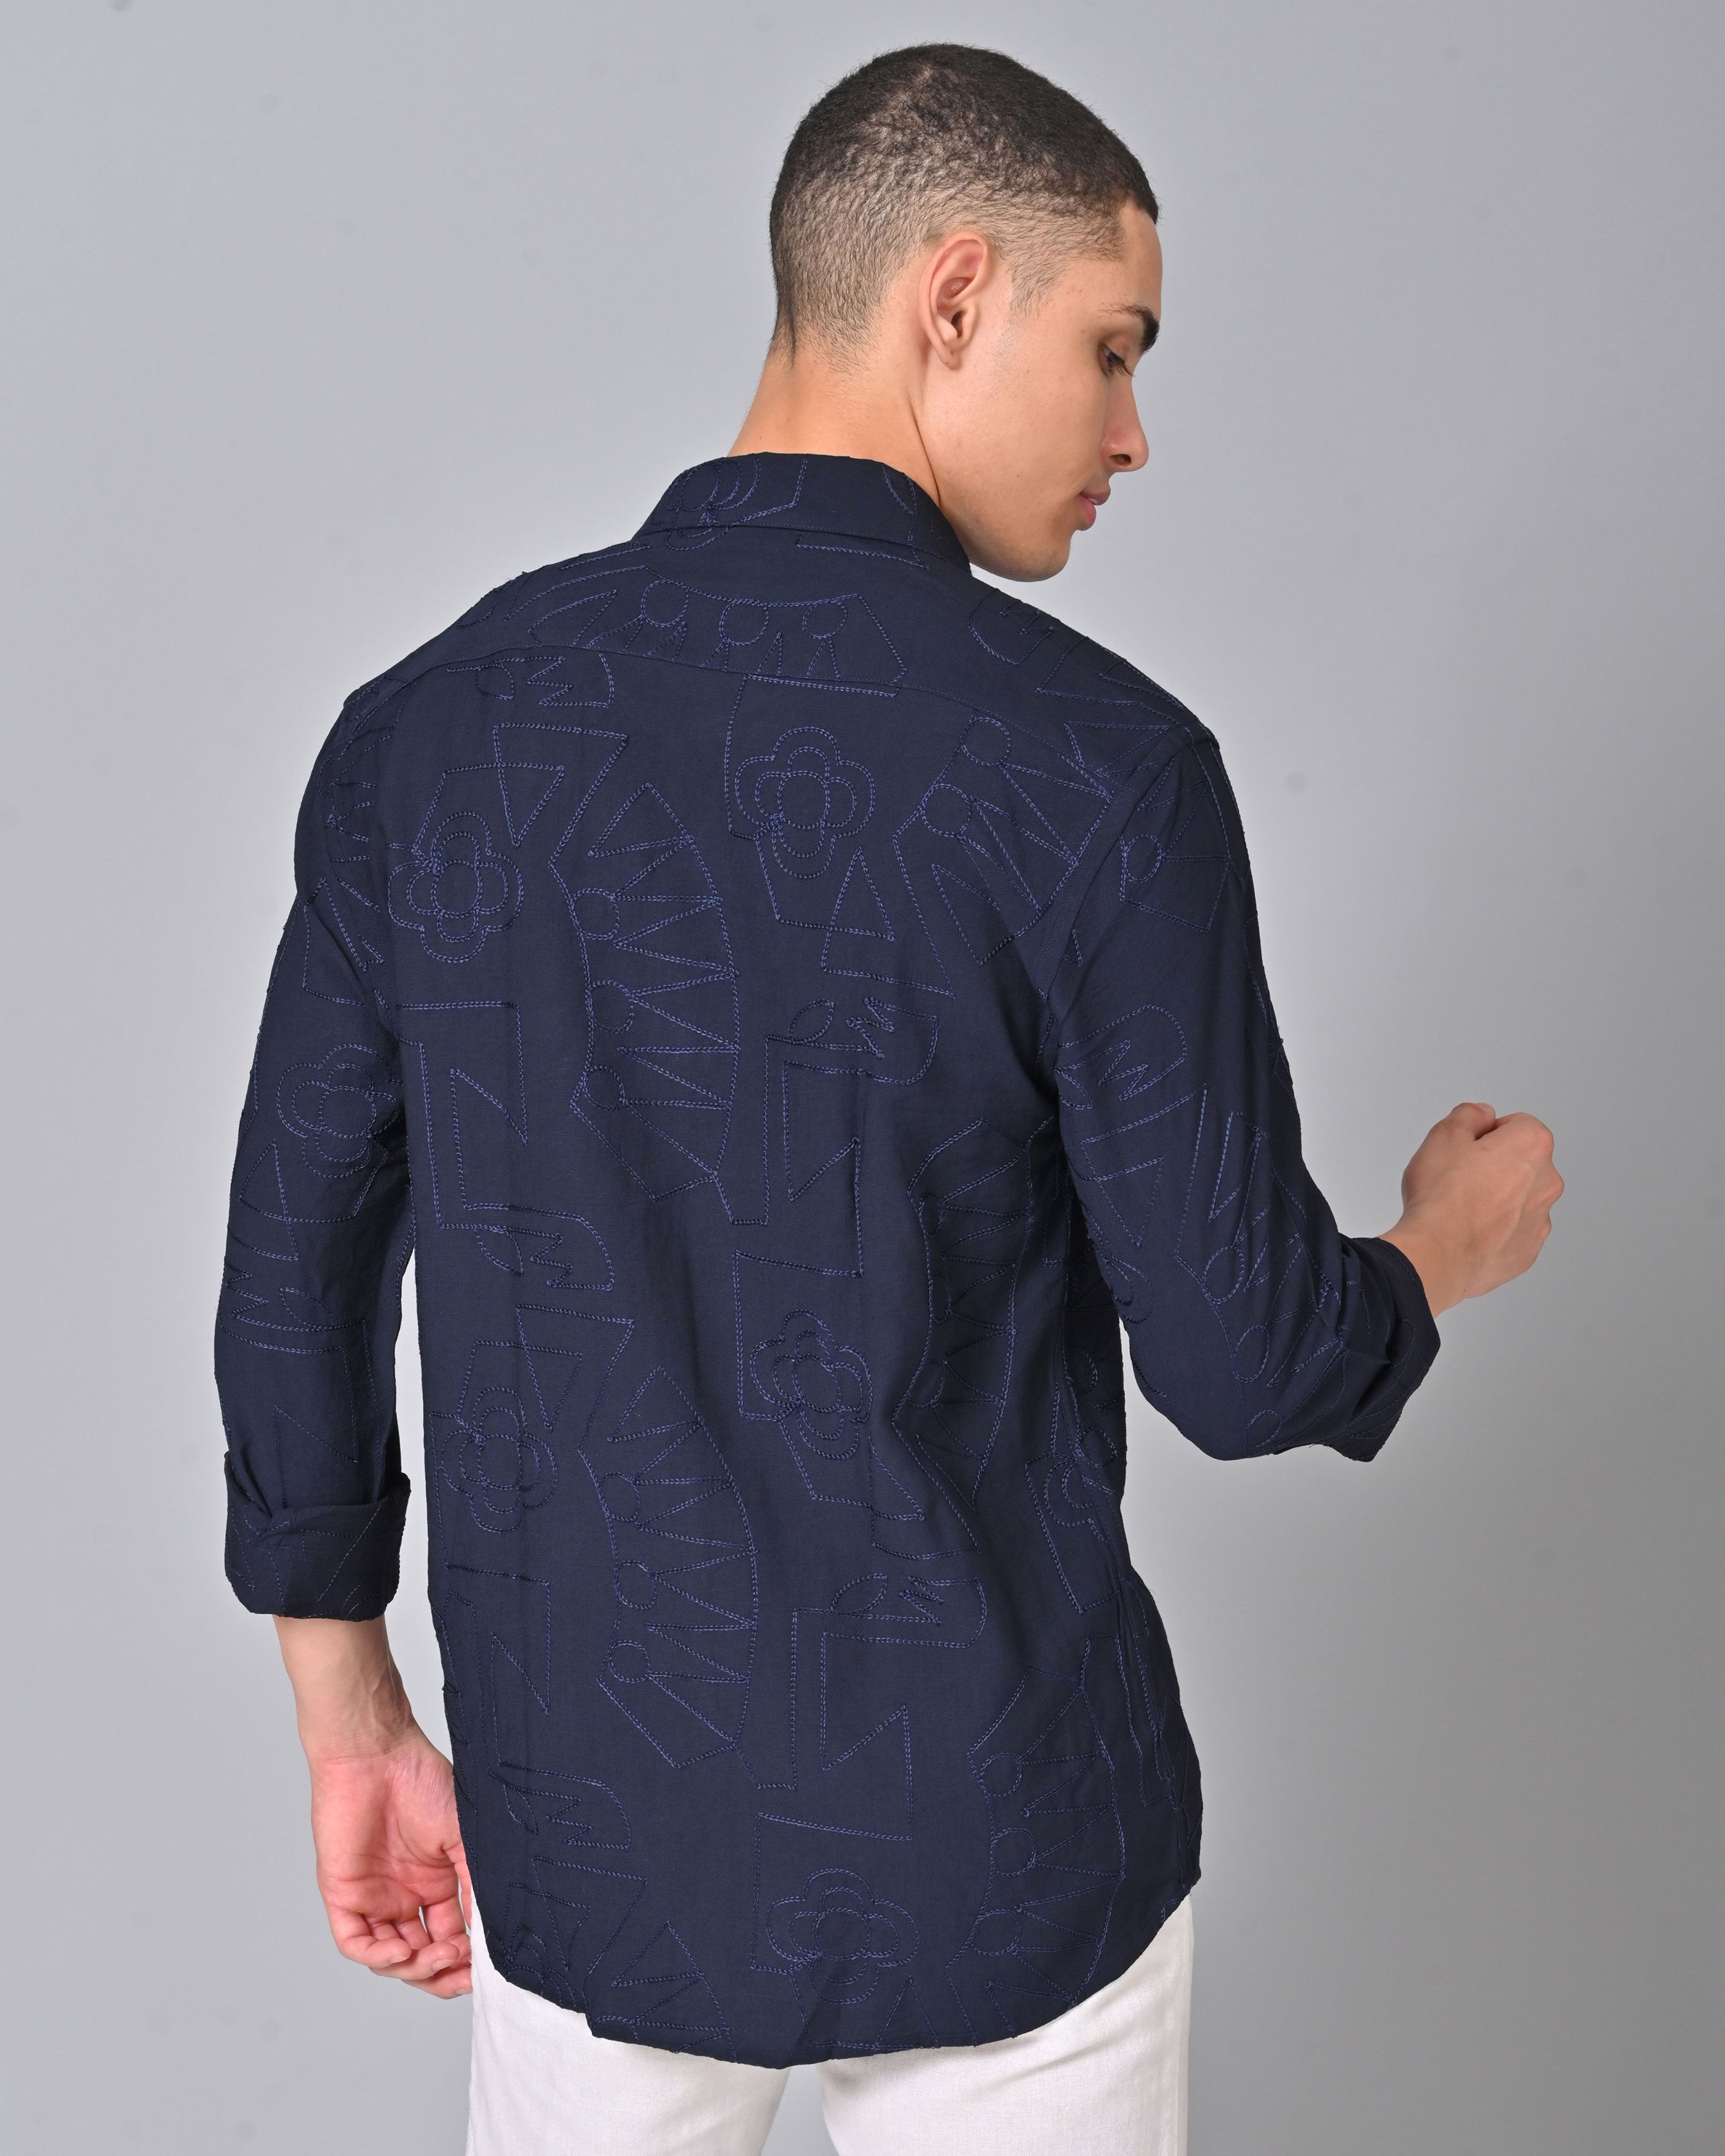 Men's Embroidered Full Sleeve Dark Blue Shirt